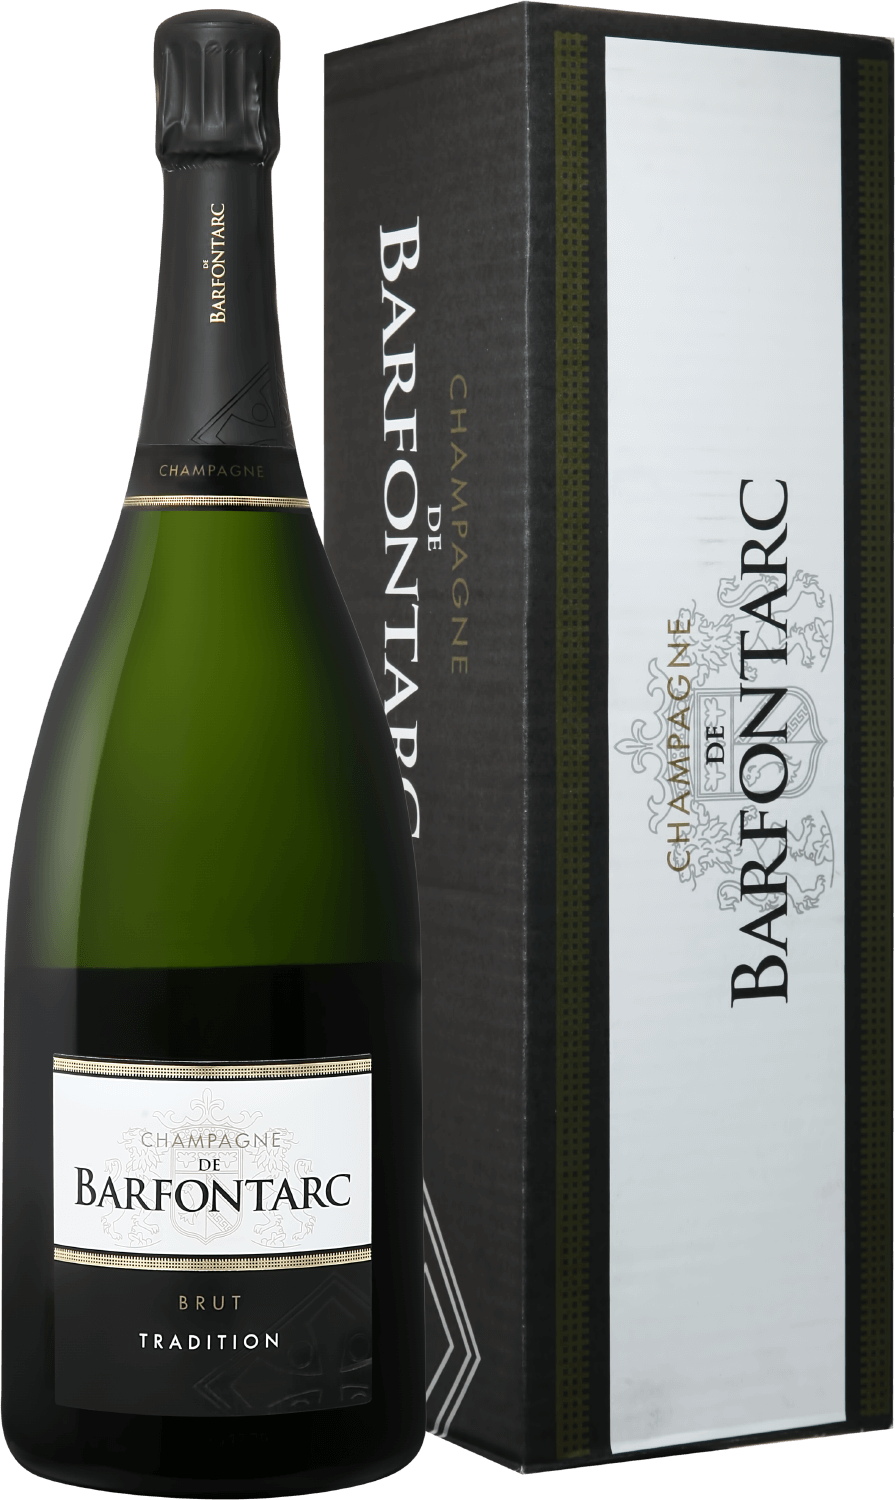 Barfontarc Tradition Brut Champagne АOC Coopérative Vinicole de la Région de Baroville (gift box) eugene iii rosé brut champagne аoc coopérative vinicole de la région de baroville